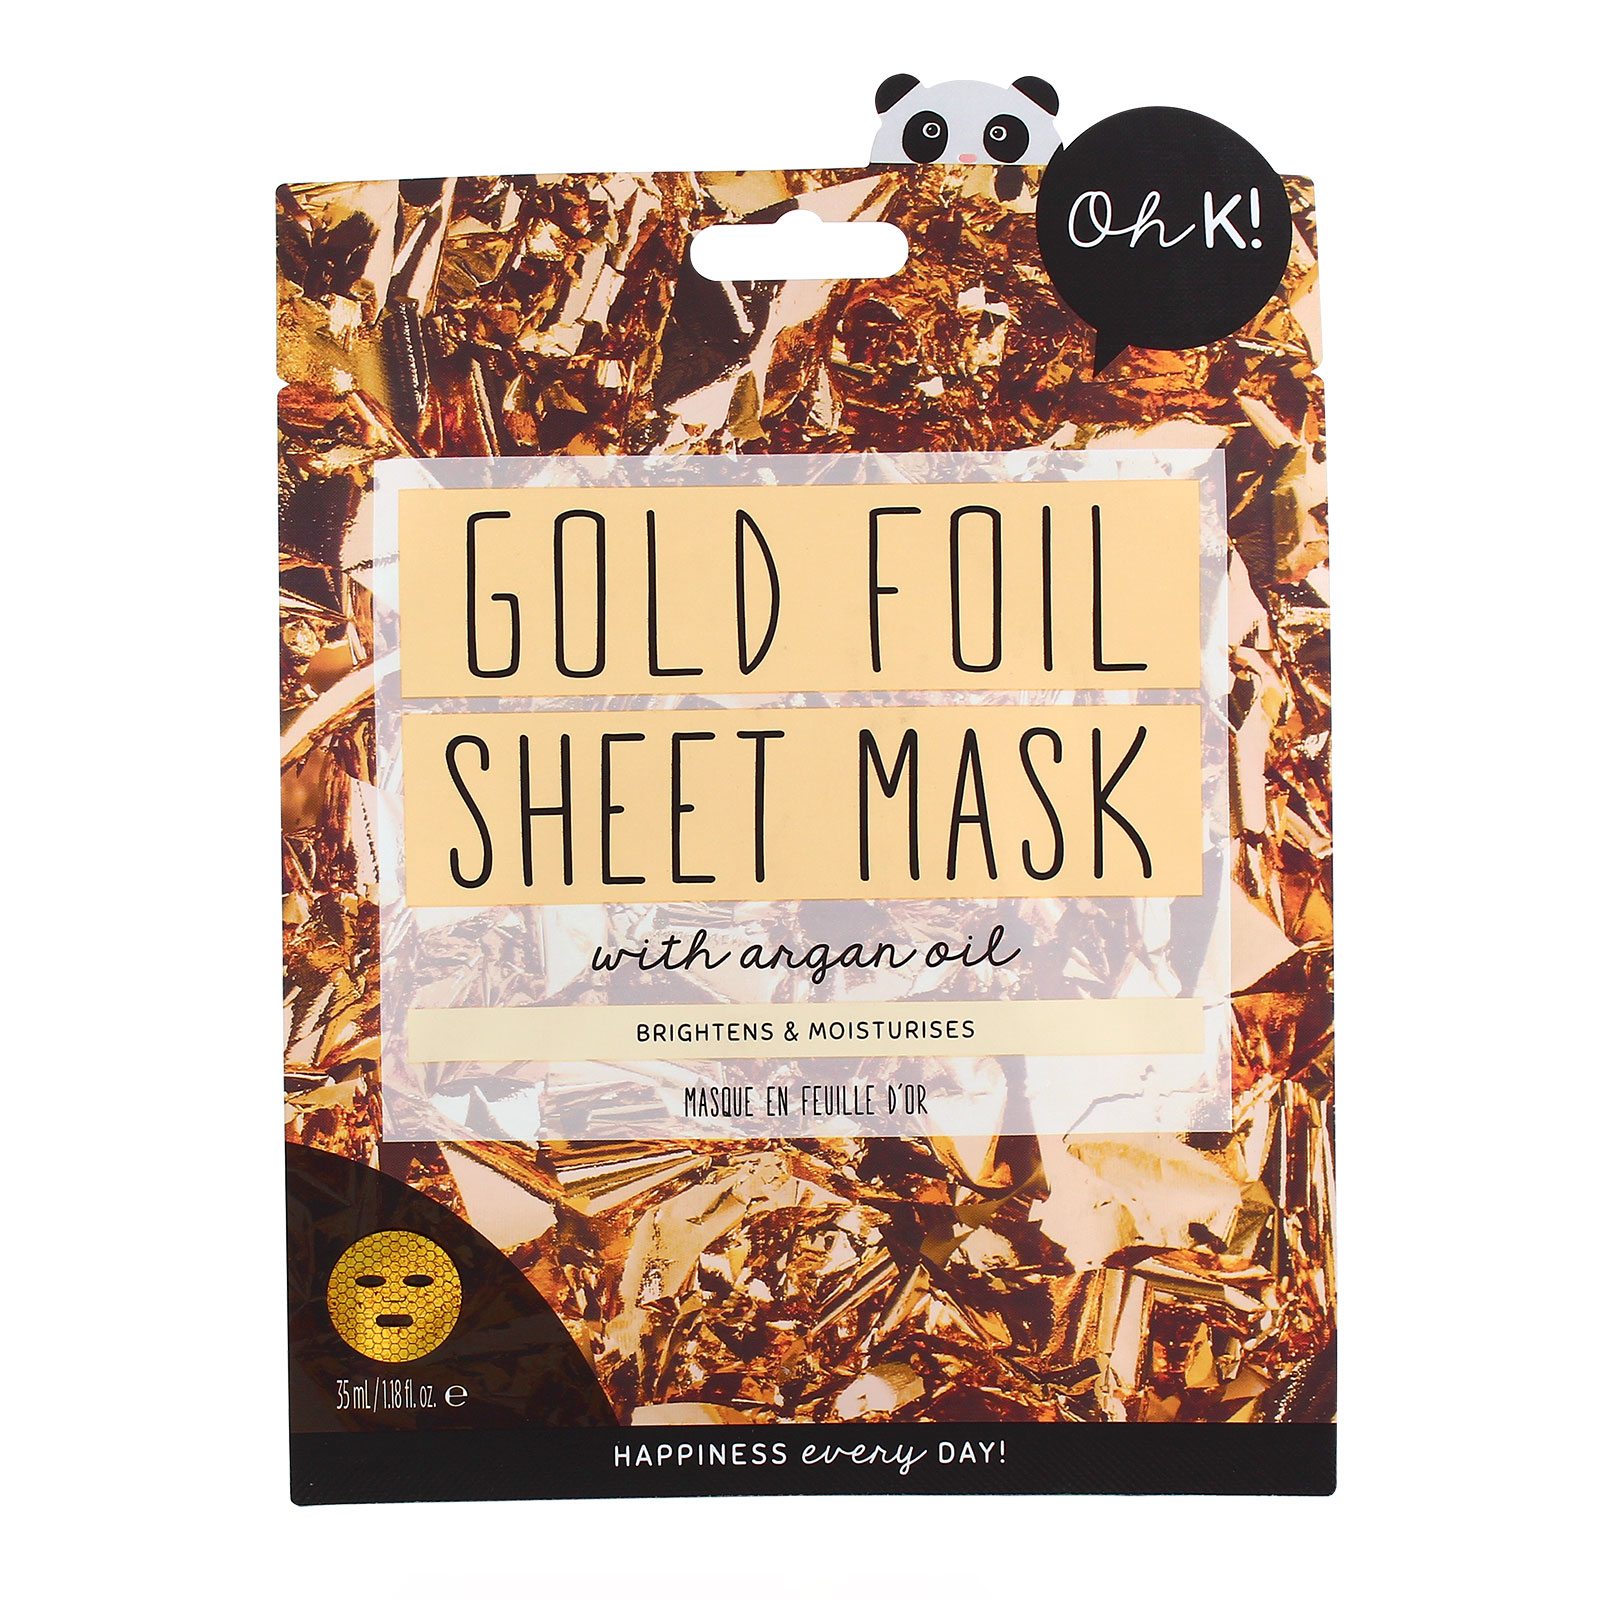 oh k! dewy skin gold foil sheet mask